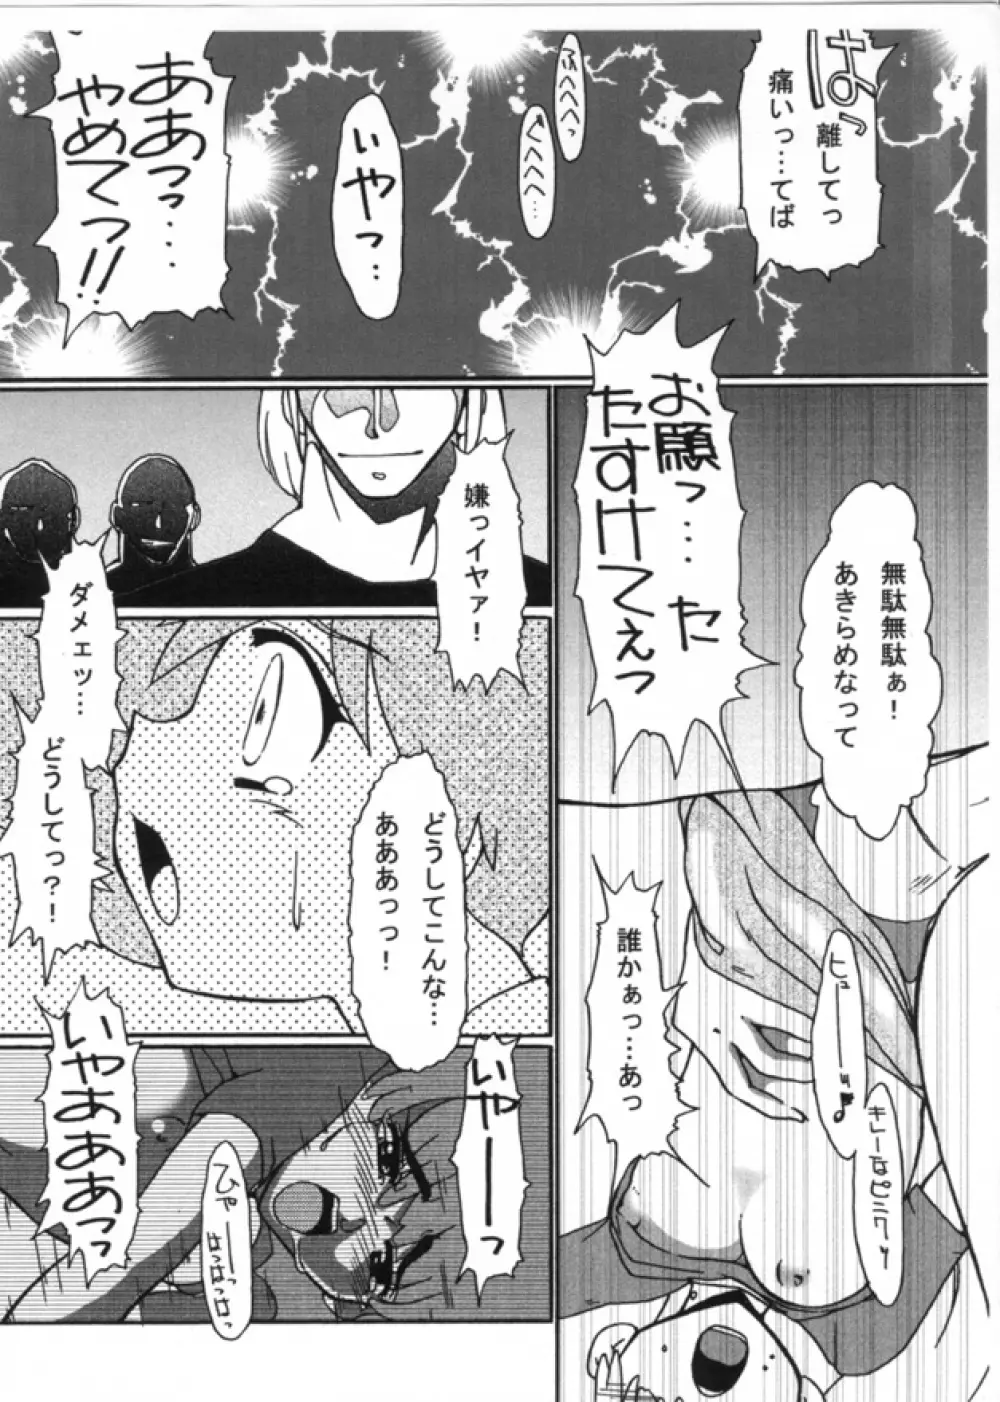 KASUMIX XPLOSION Kasumi Comic part5 36ページ